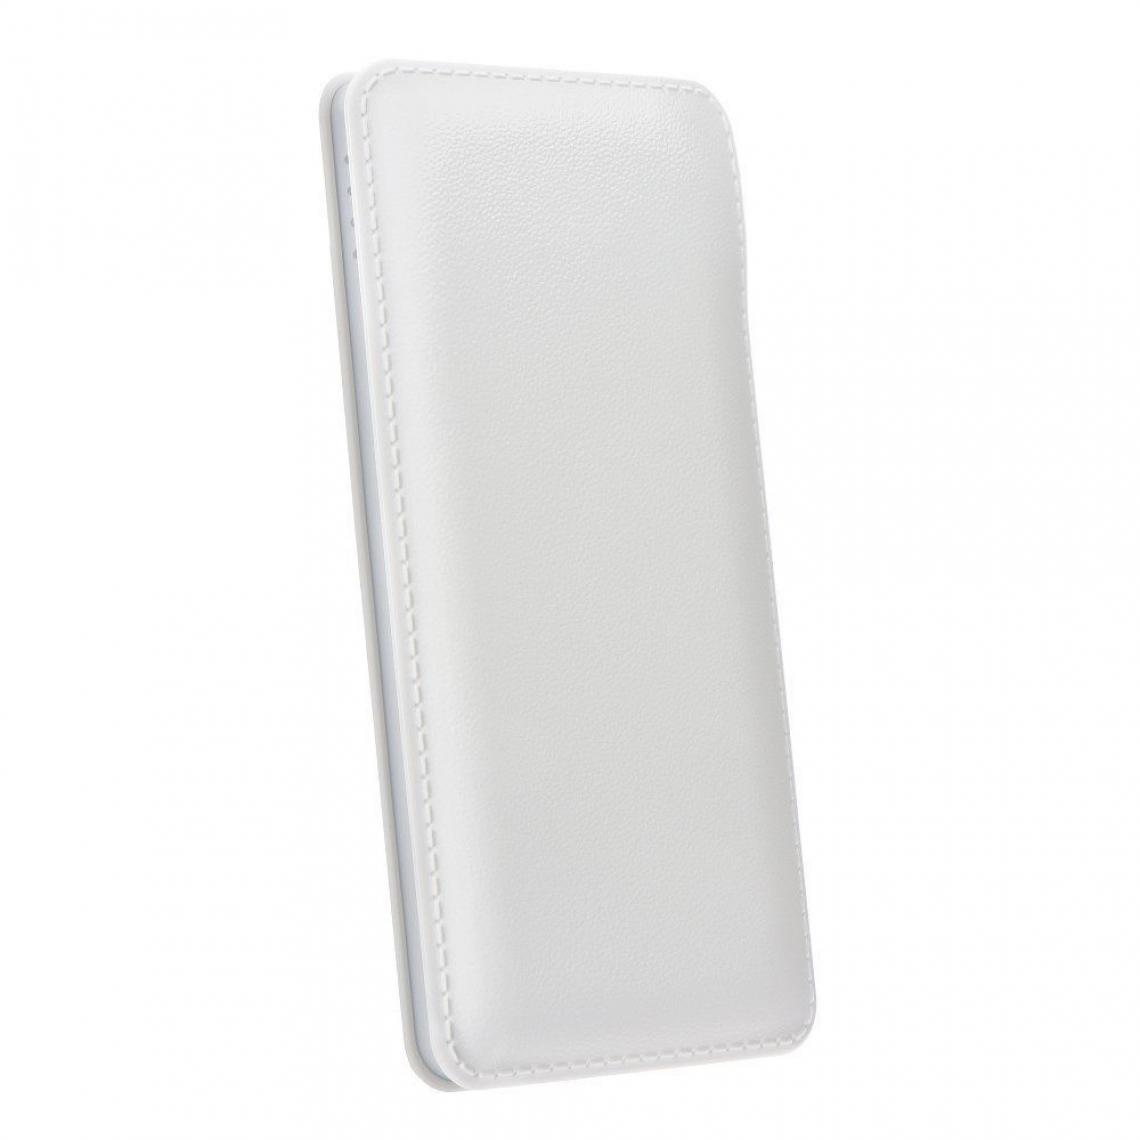 Ozzzo - Chargeur batterie externe 20000 mAh powerbank ozzzo blanc pour Samsung Galaxy F41 - Autres accessoires smartphone